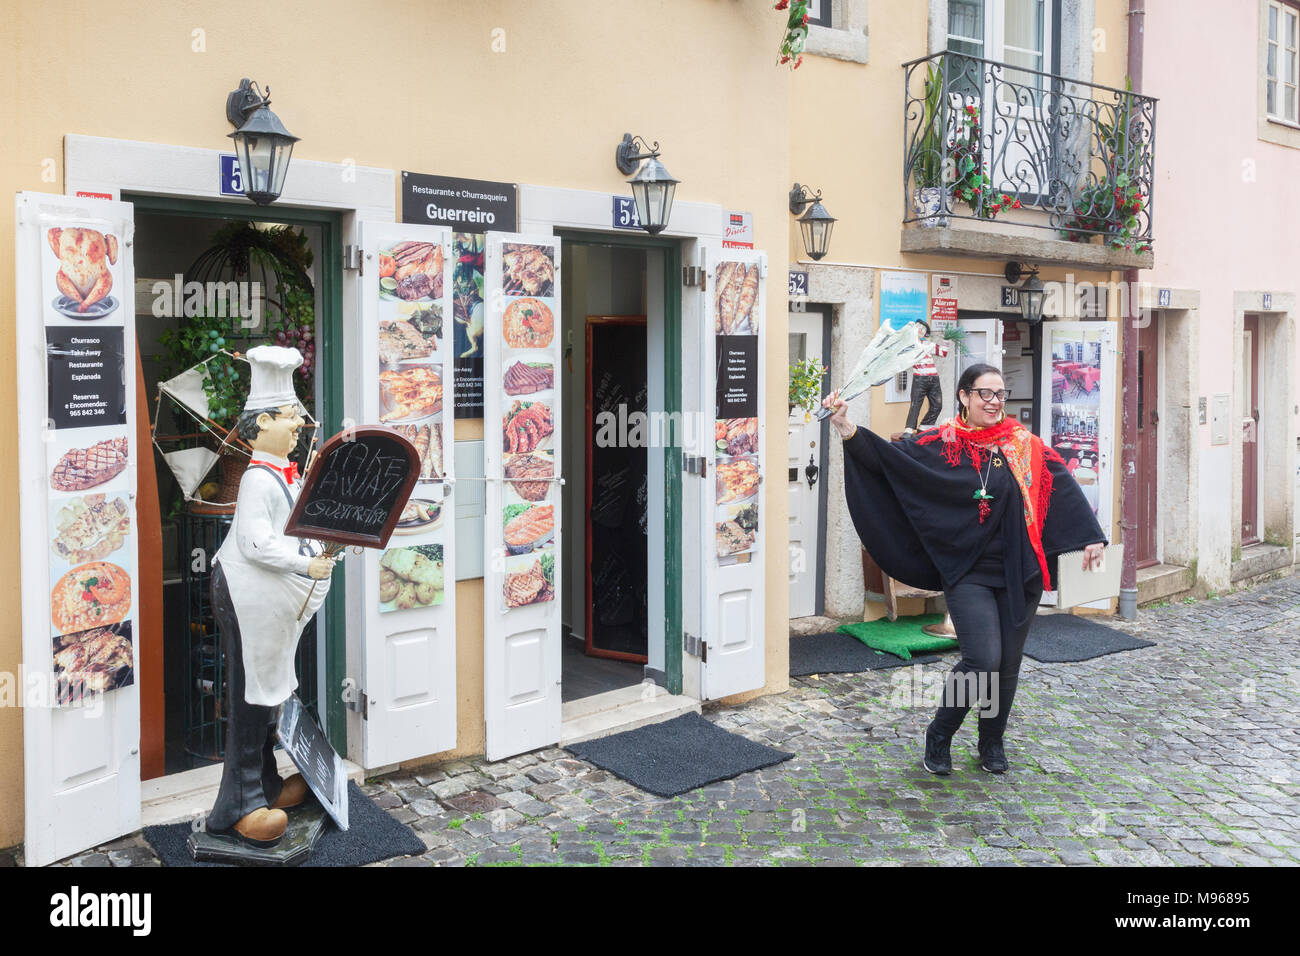 1. März 2018: Lissabon, Portugal - eine junge Frau zieht das Geschäft außerhalb Restaurant Guerreiro in Lissabon Altstadt. Sie ist mit einem Stück... Stockfoto